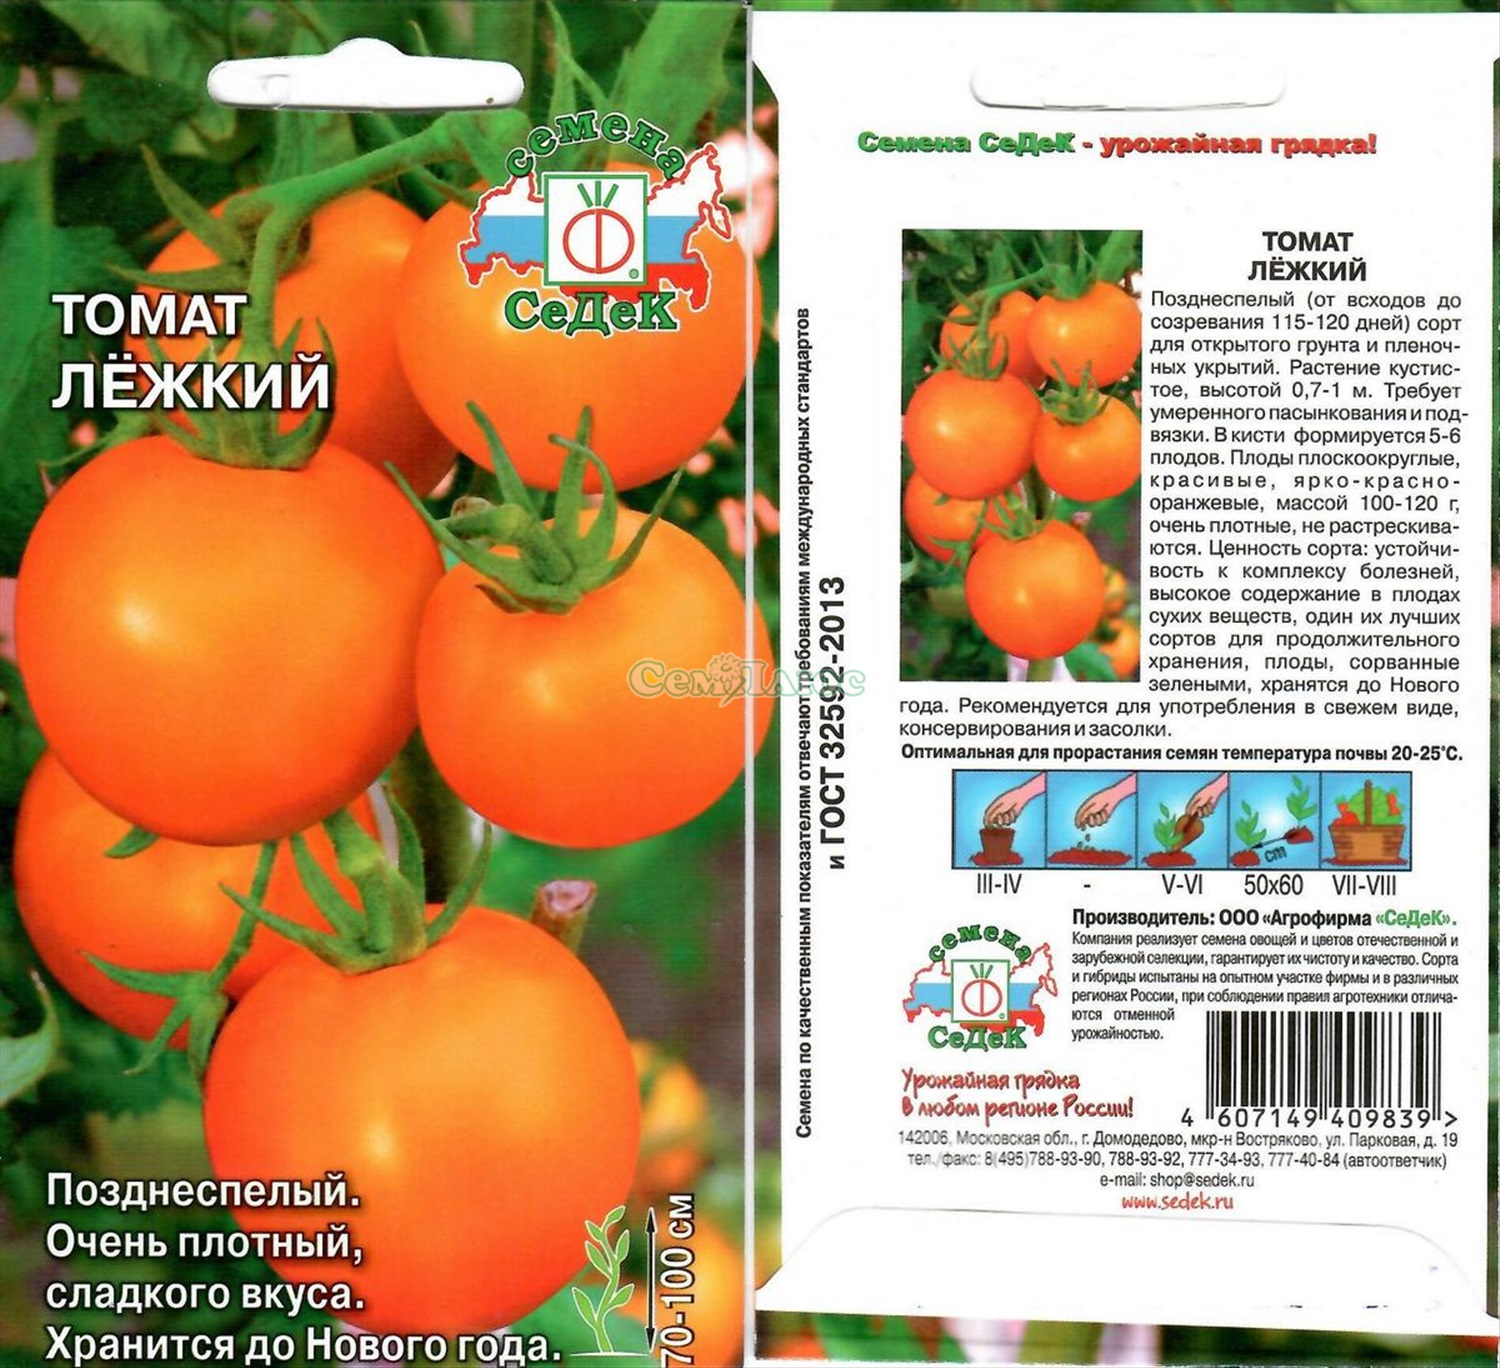 Самые высокоурожайные сорта томатов - фото, названия и описания (каталог)